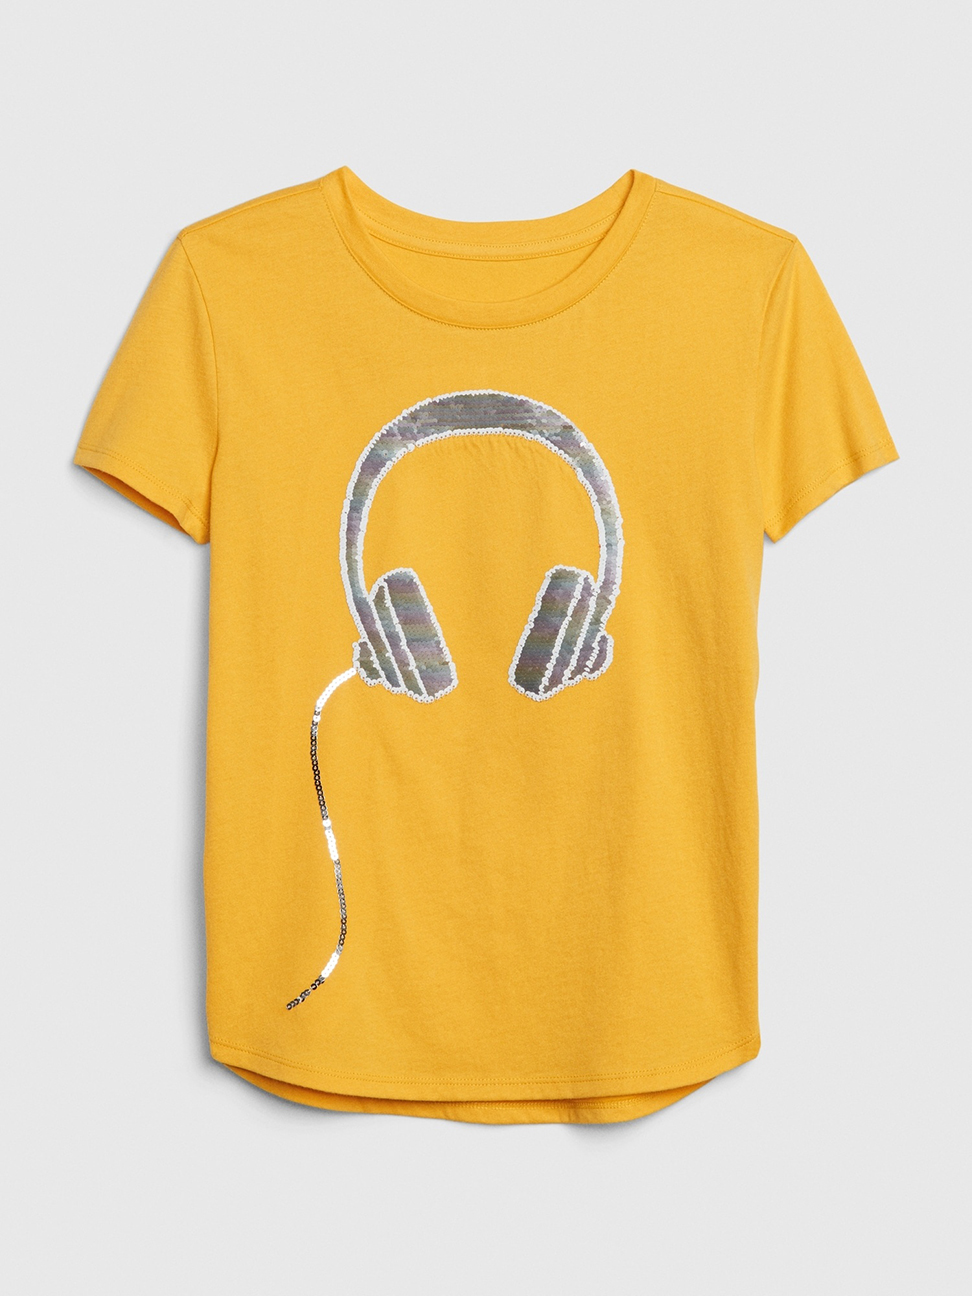 女童裝|棉質舒適圓領短袖T恤-黃色